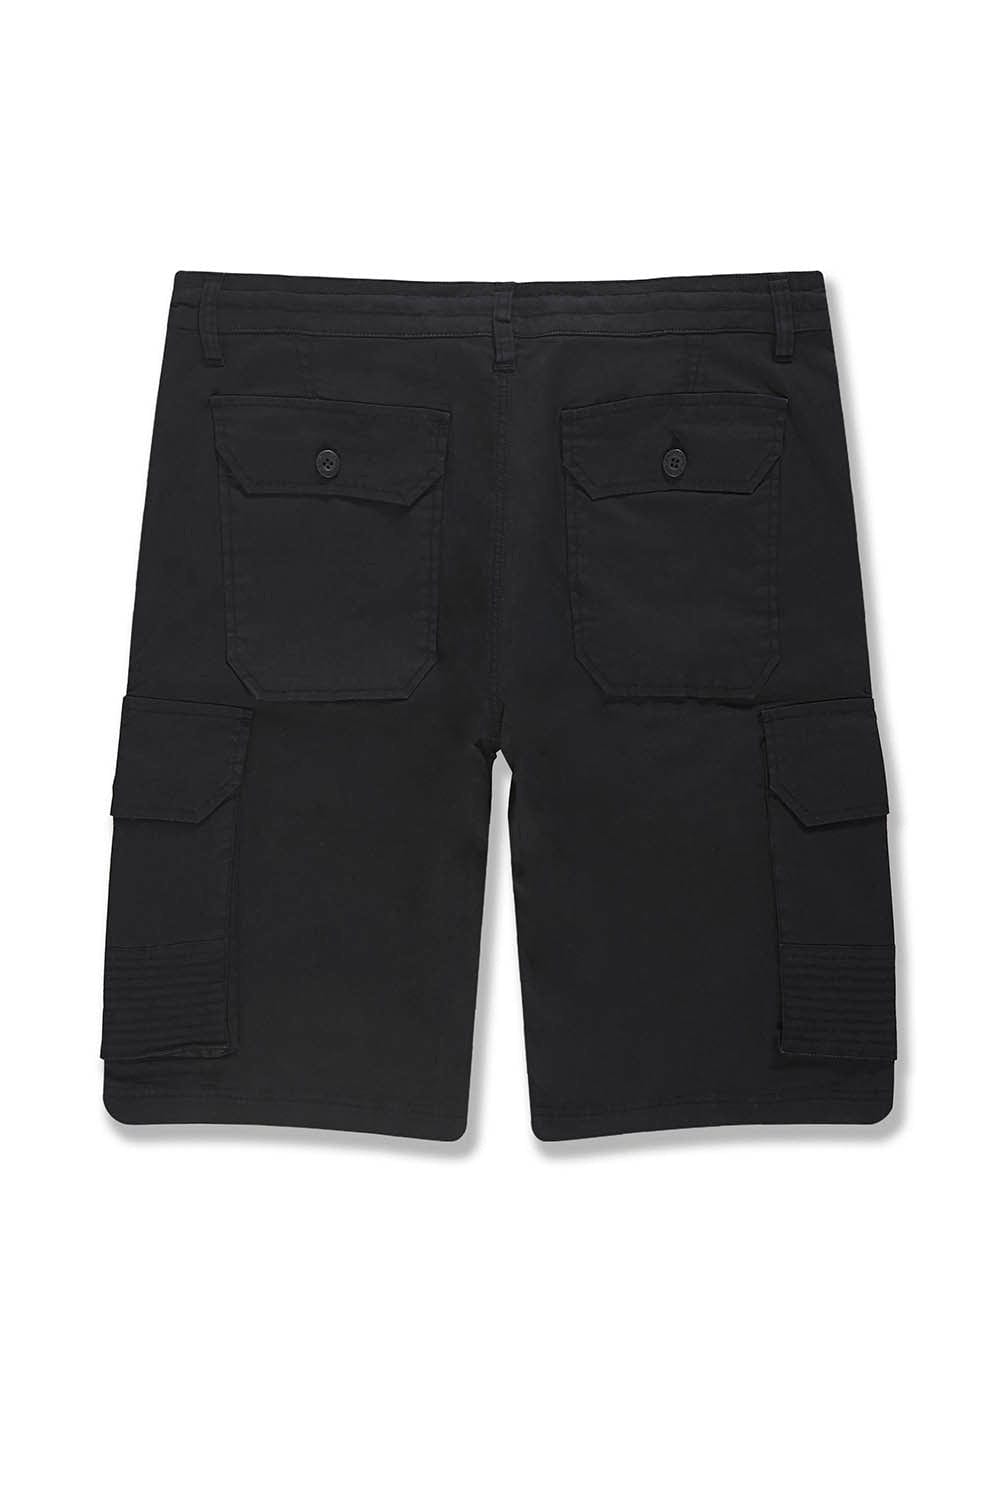 BB OG - Ripstop Cargo Shorts